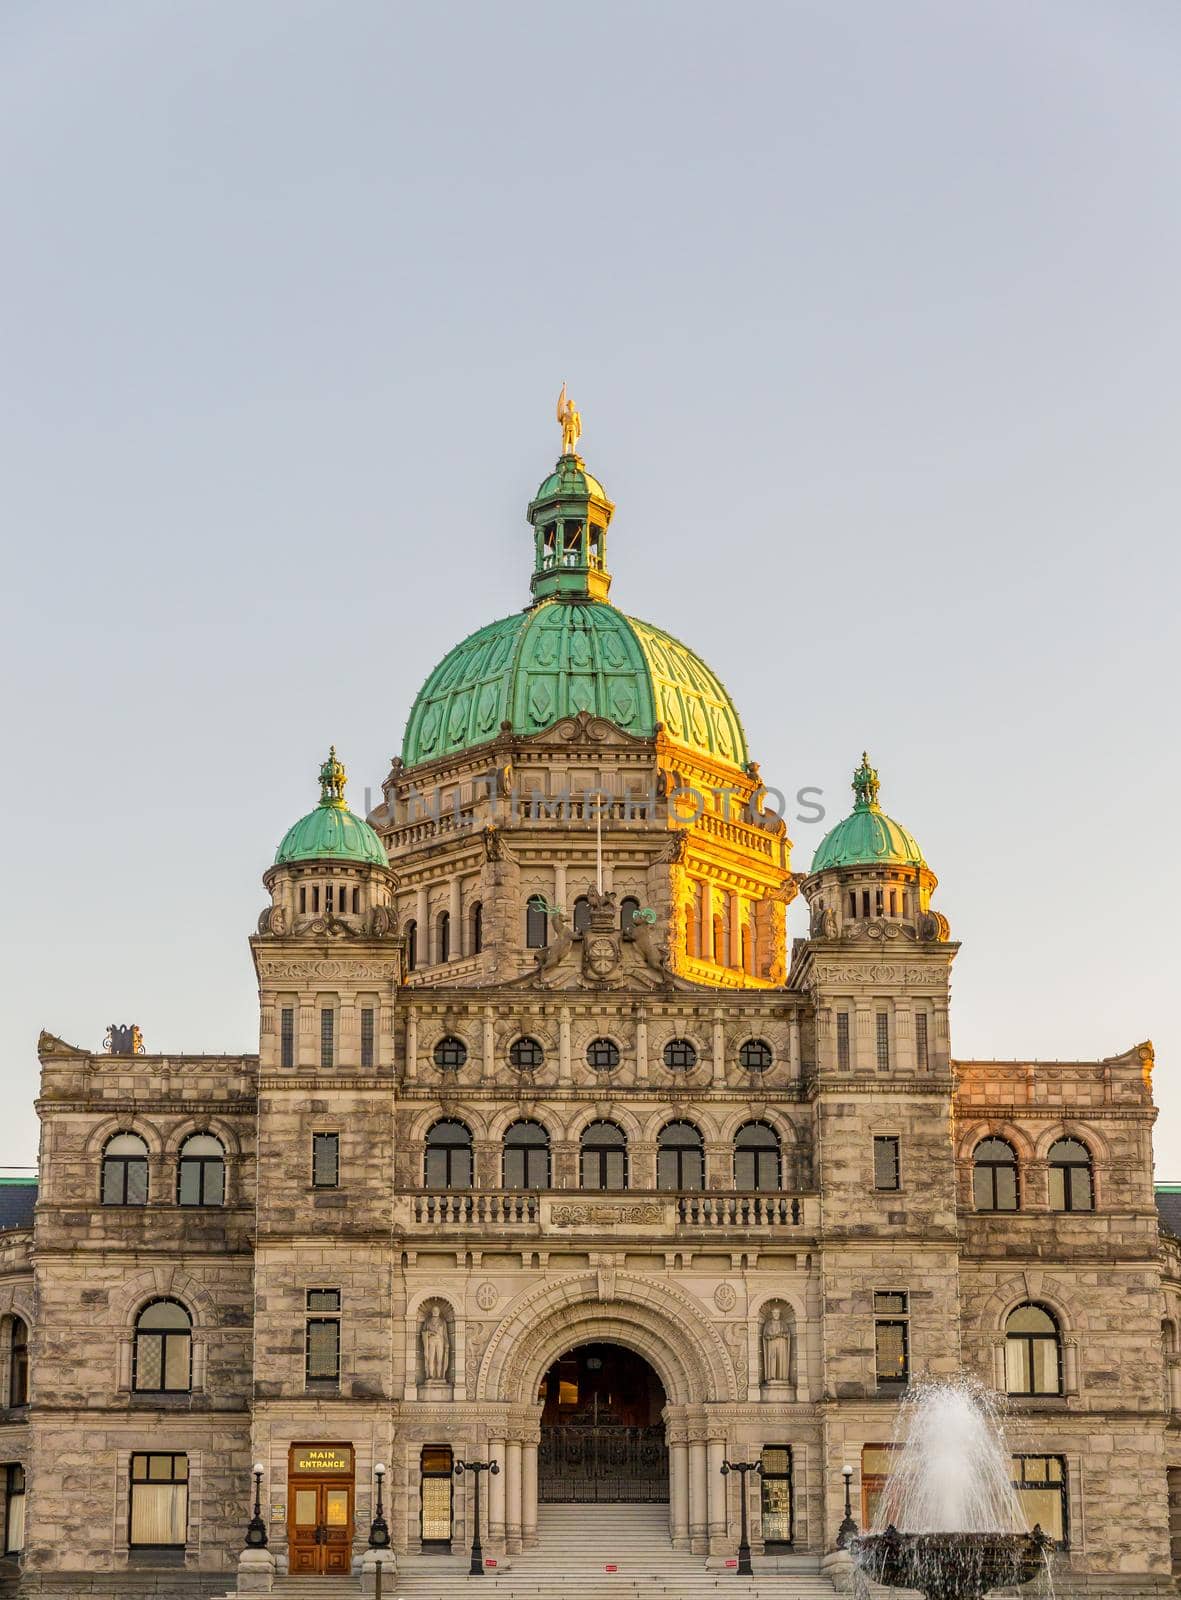 Parliament buildings located in Victoria, British Columbia, Canada.